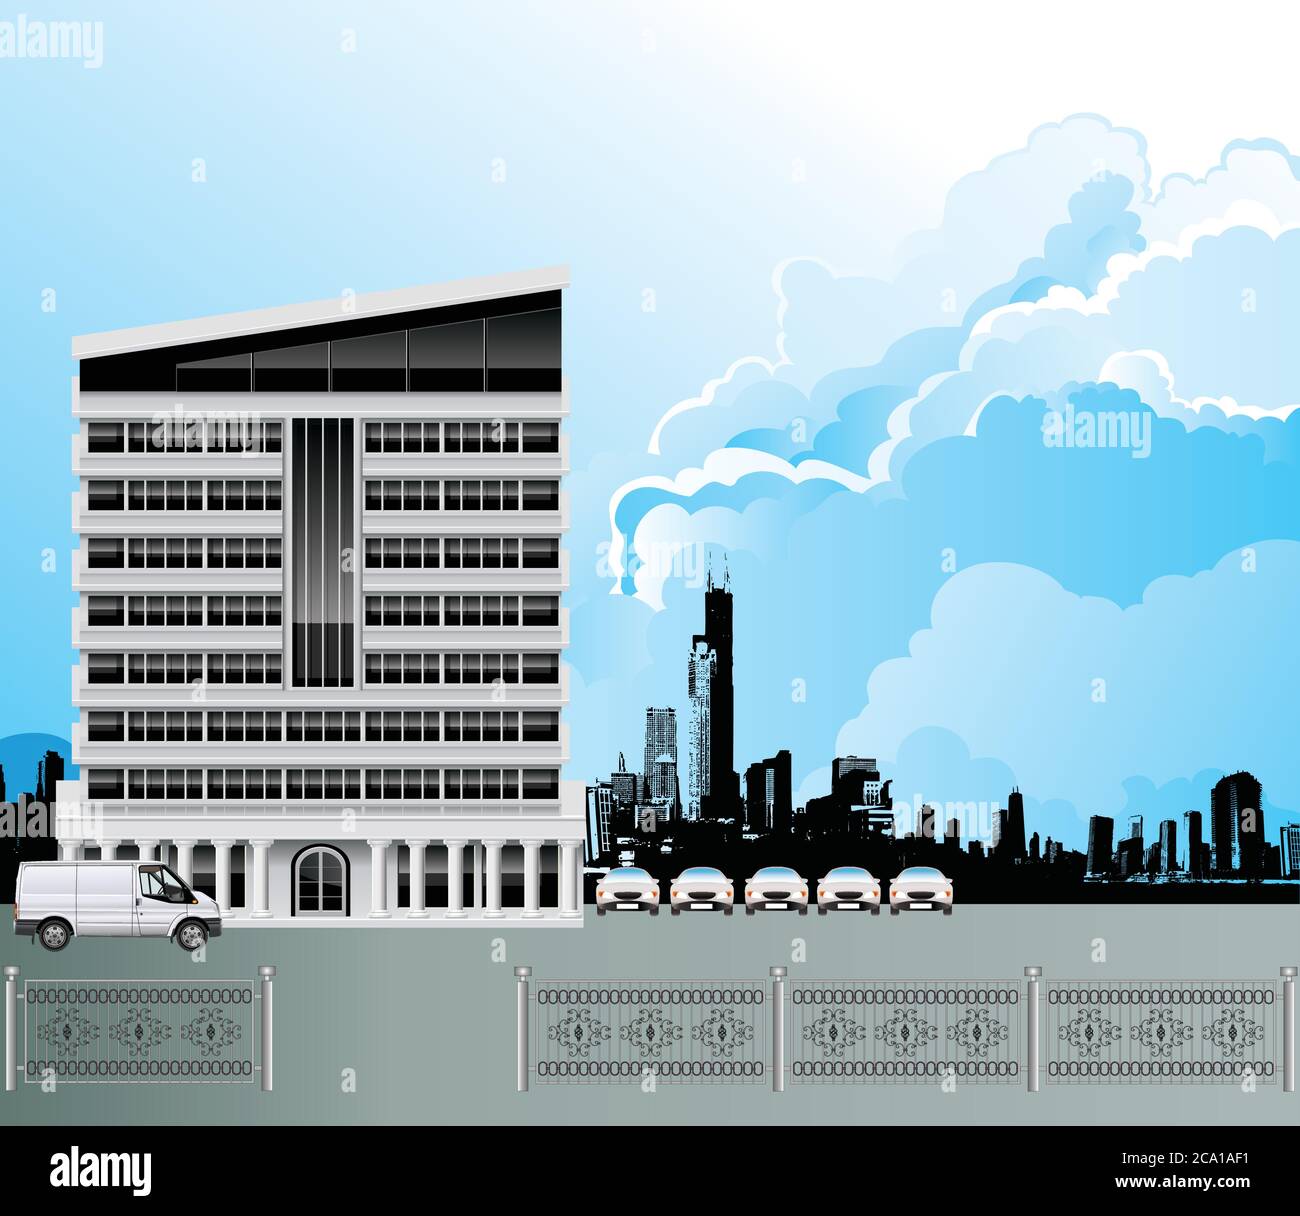 Immeuble de bureaux moderne avec gratte-ciel de ville en silhouettes génériques, situé dans un ciel bleu nuageux Illustration de Vecteur